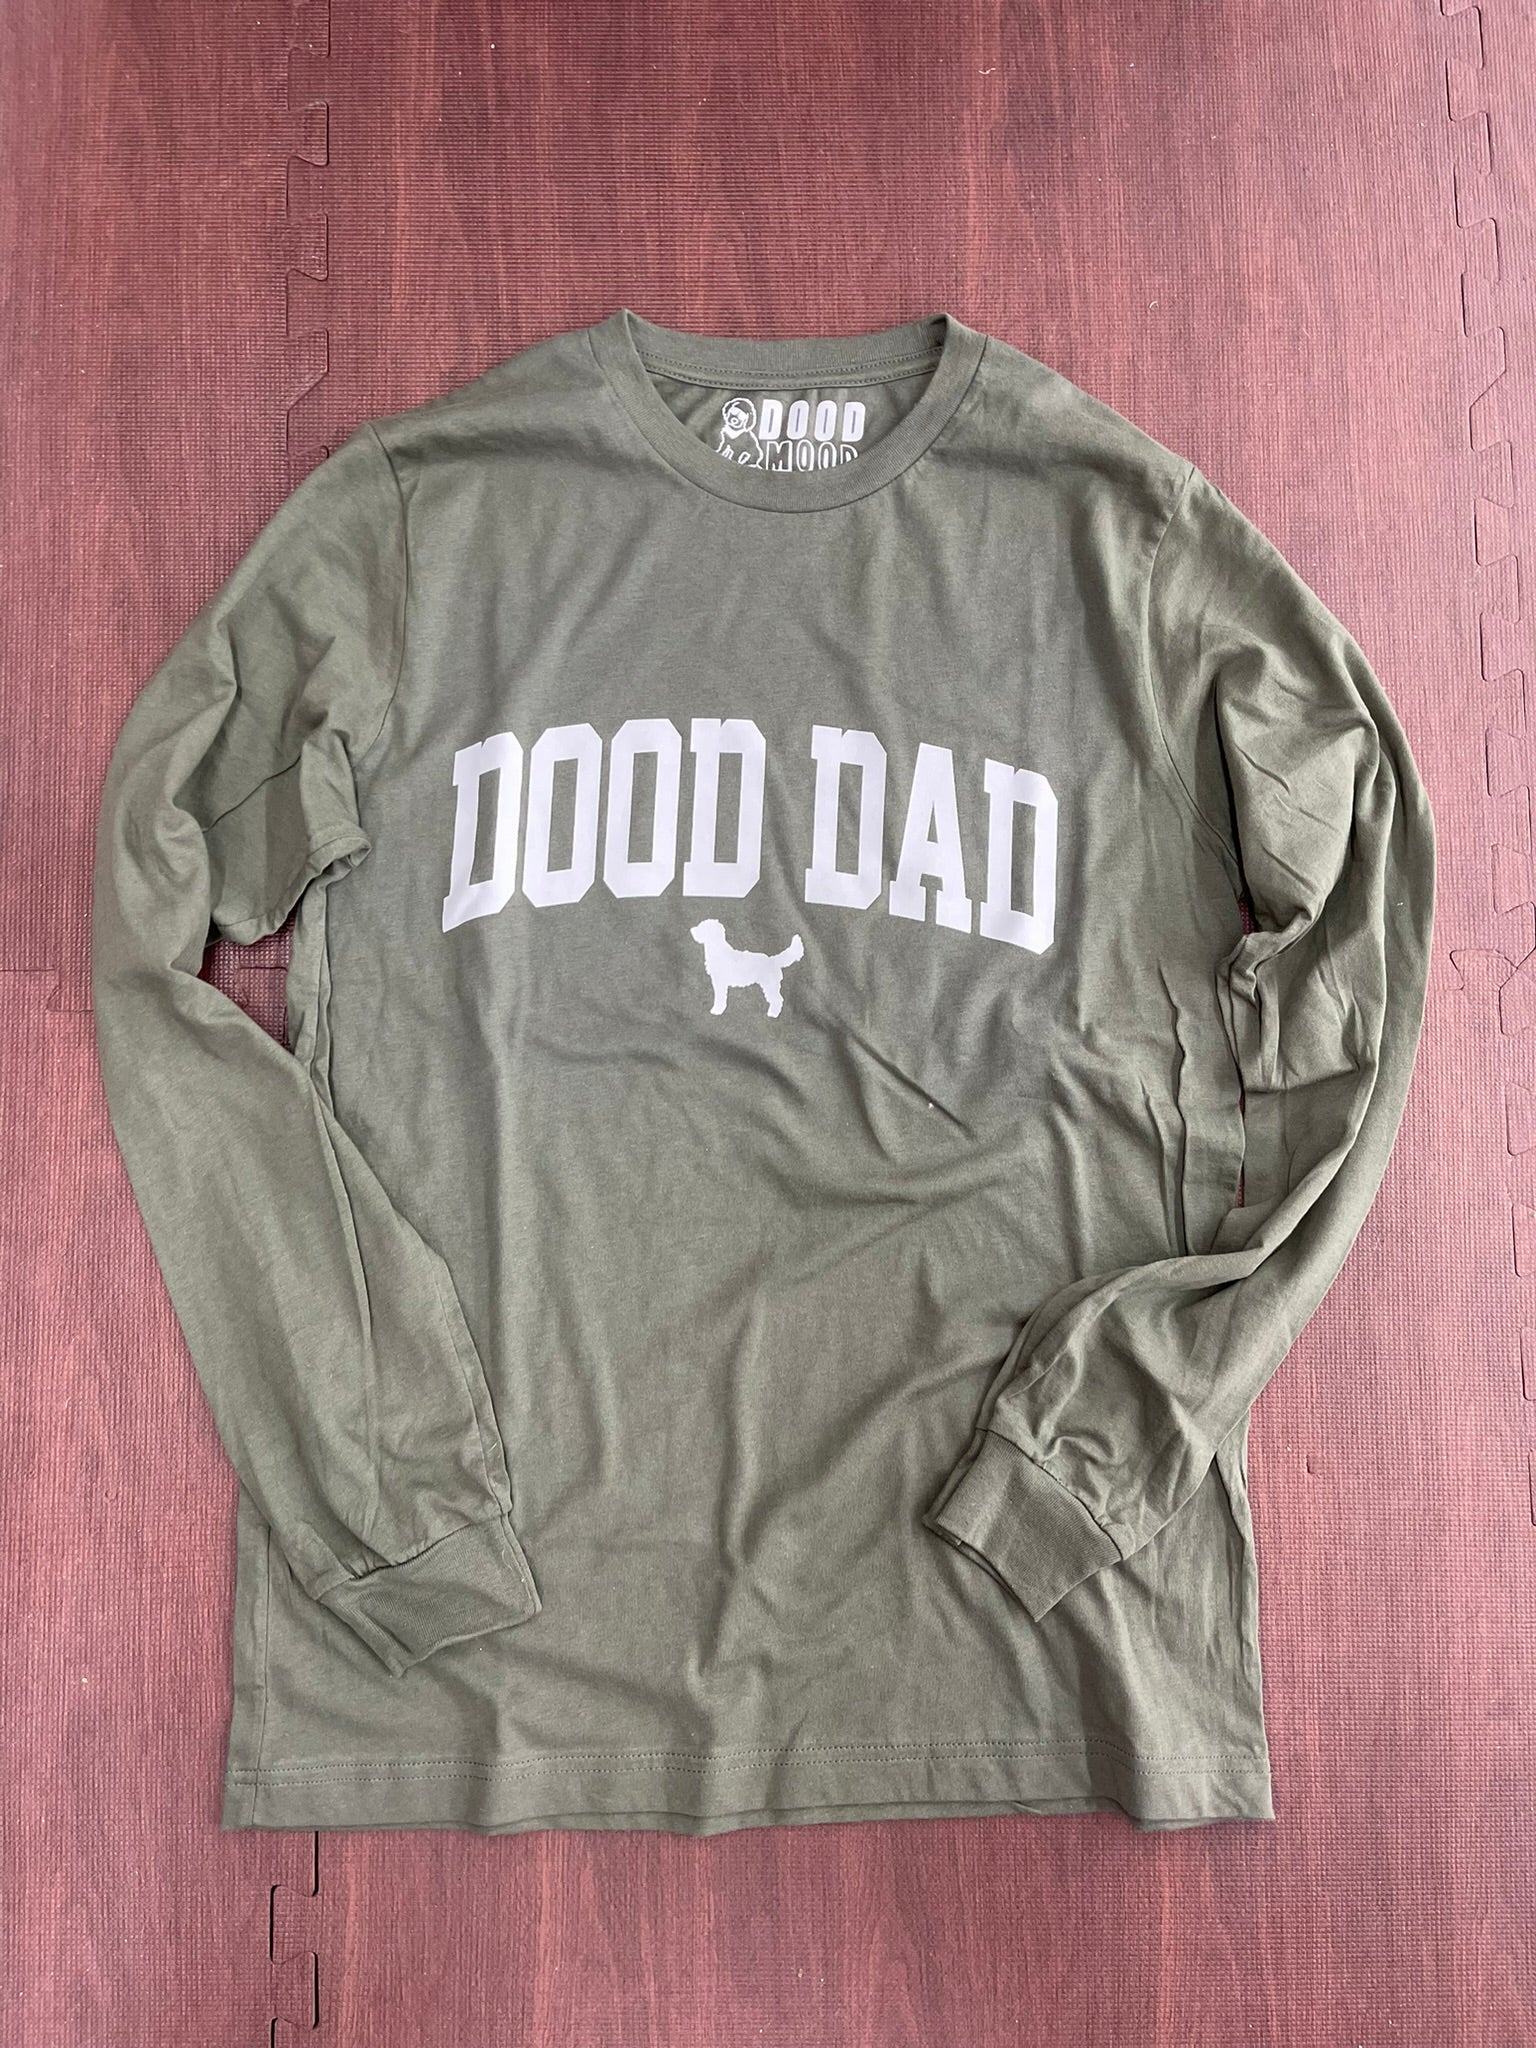 Dood DAD Long Sleeve - Military Green